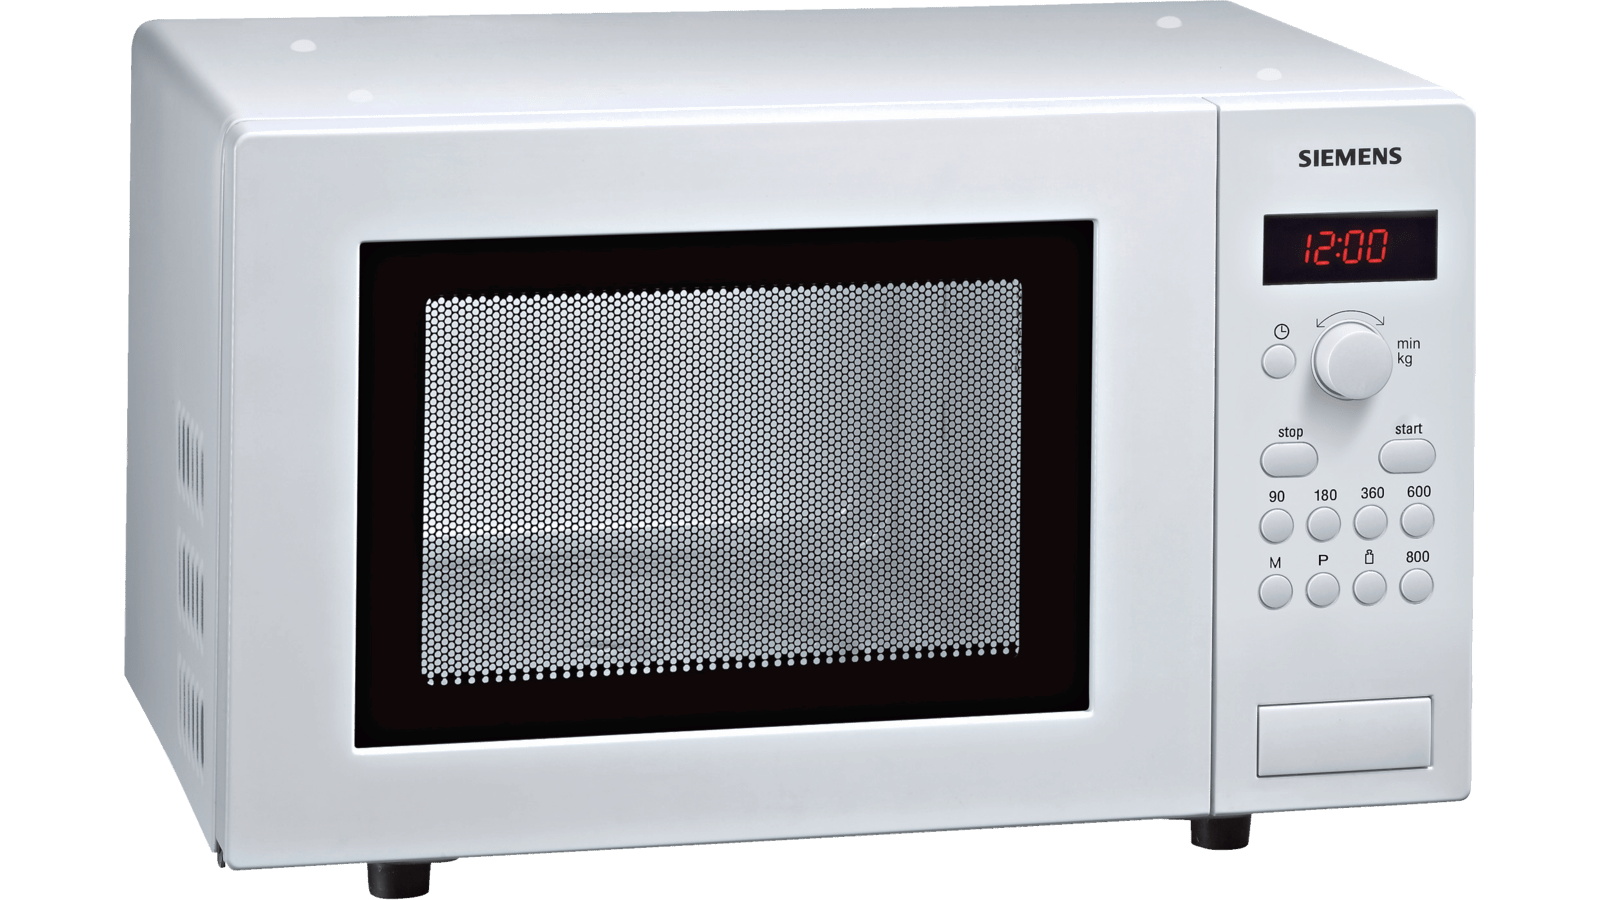 En smule Fugtig Erkende HF15M241 Mikroovn, fritstående | Siemens Hvidevarer DK